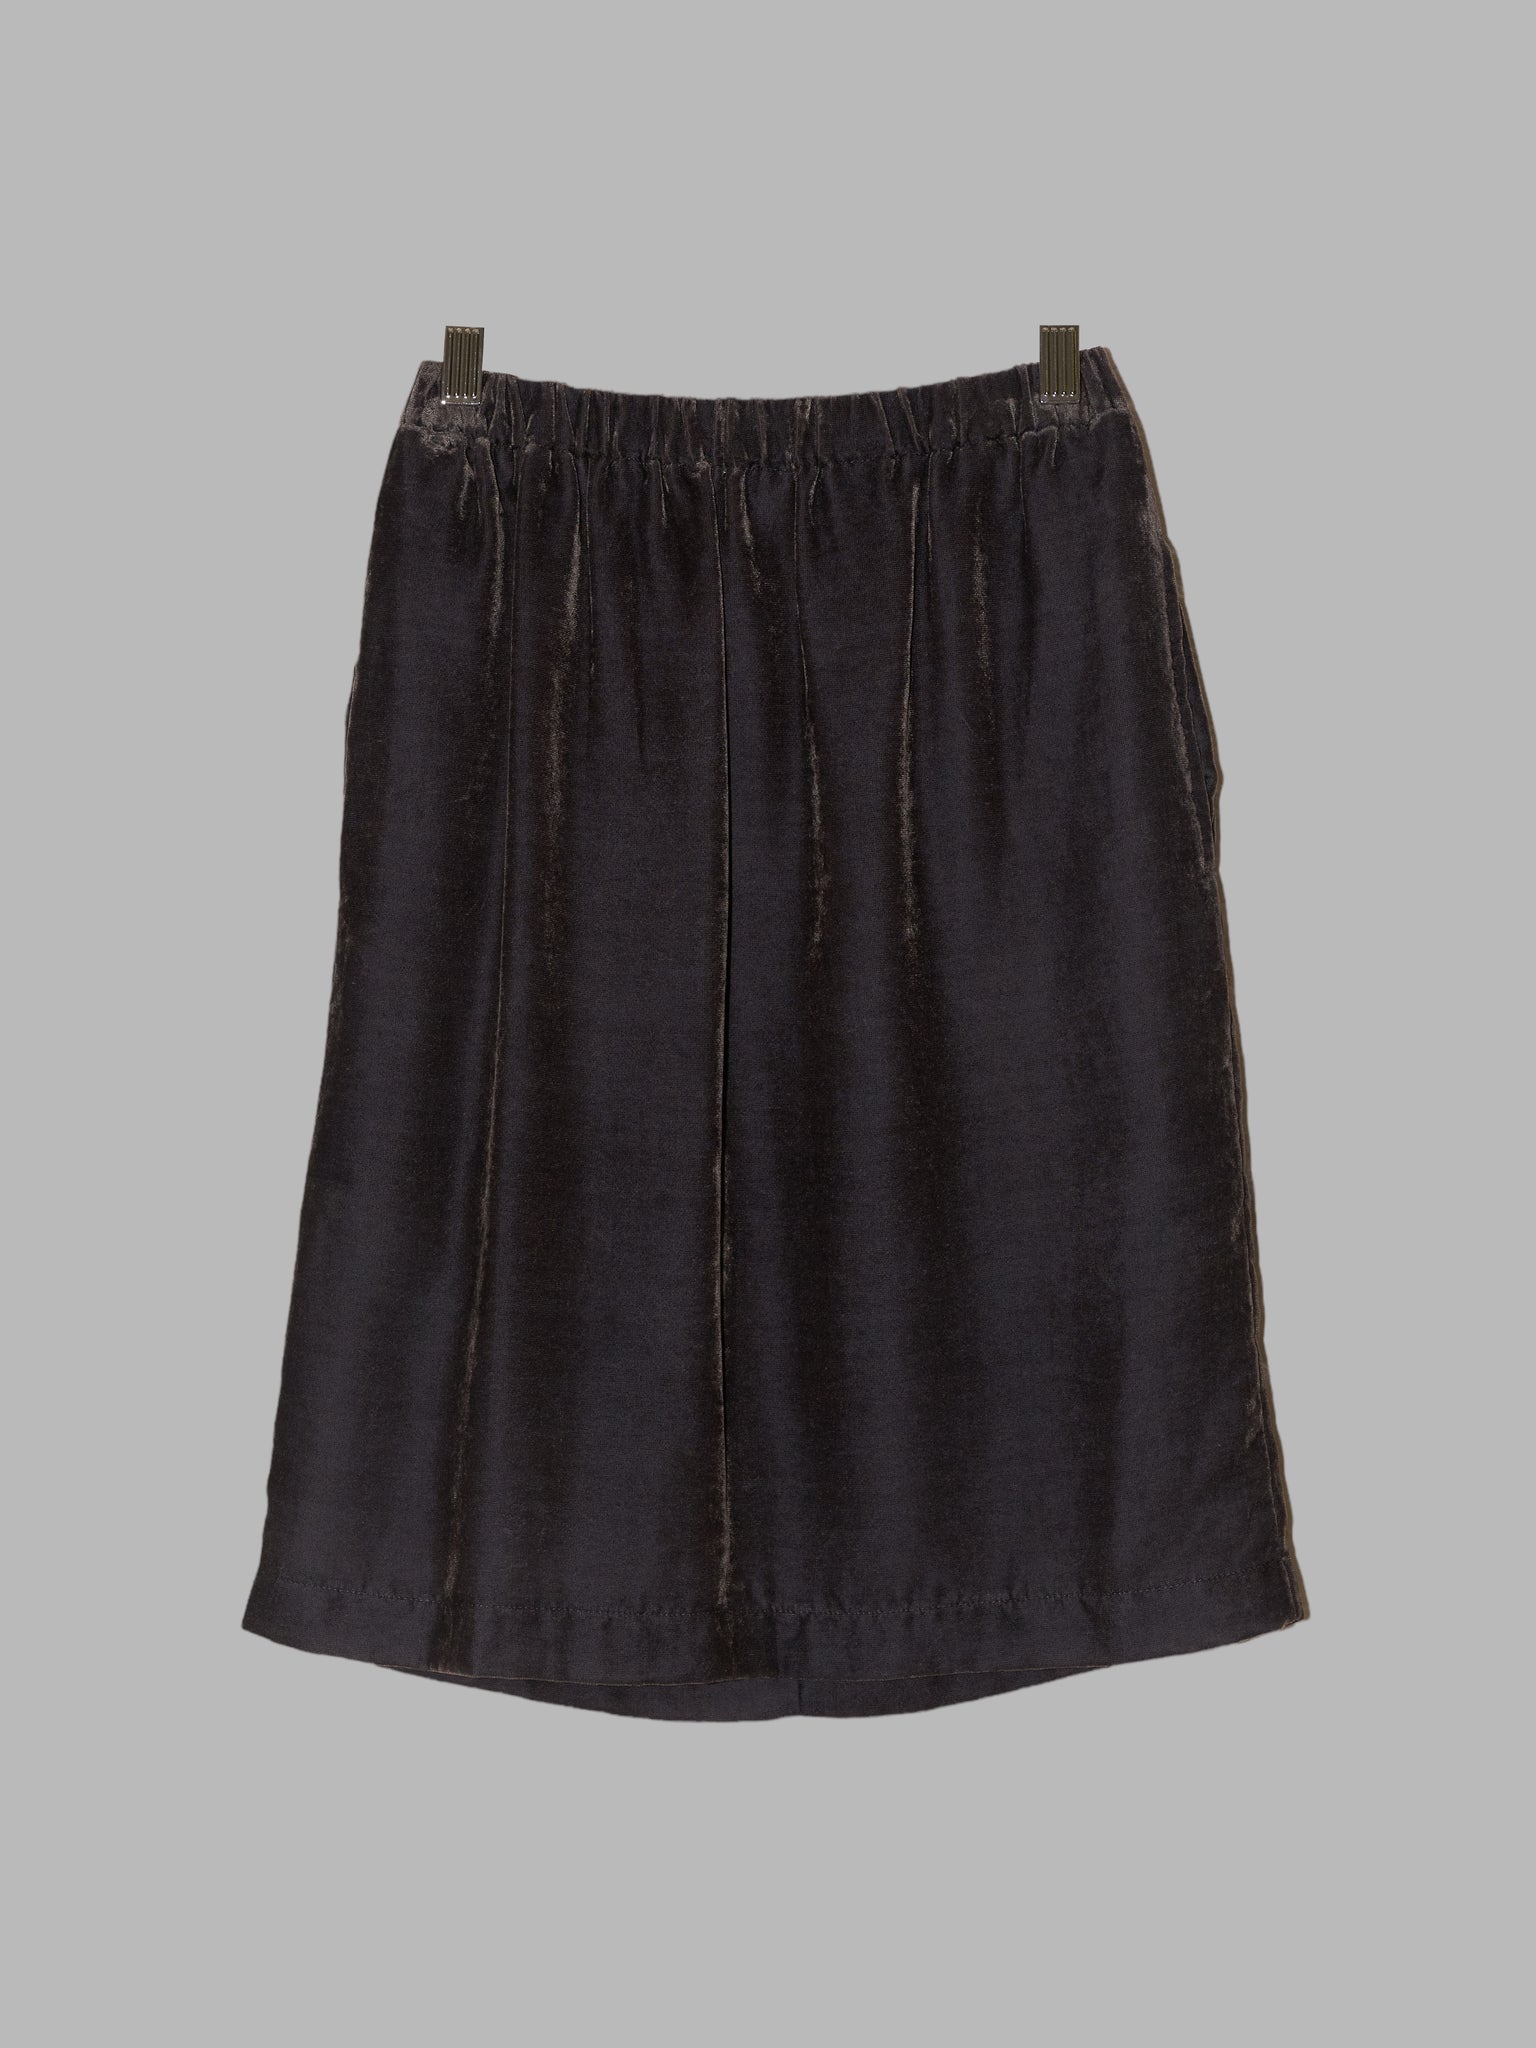 Comme des Garcons 1990 mushroom-y velvet elastic waist skirt - M S